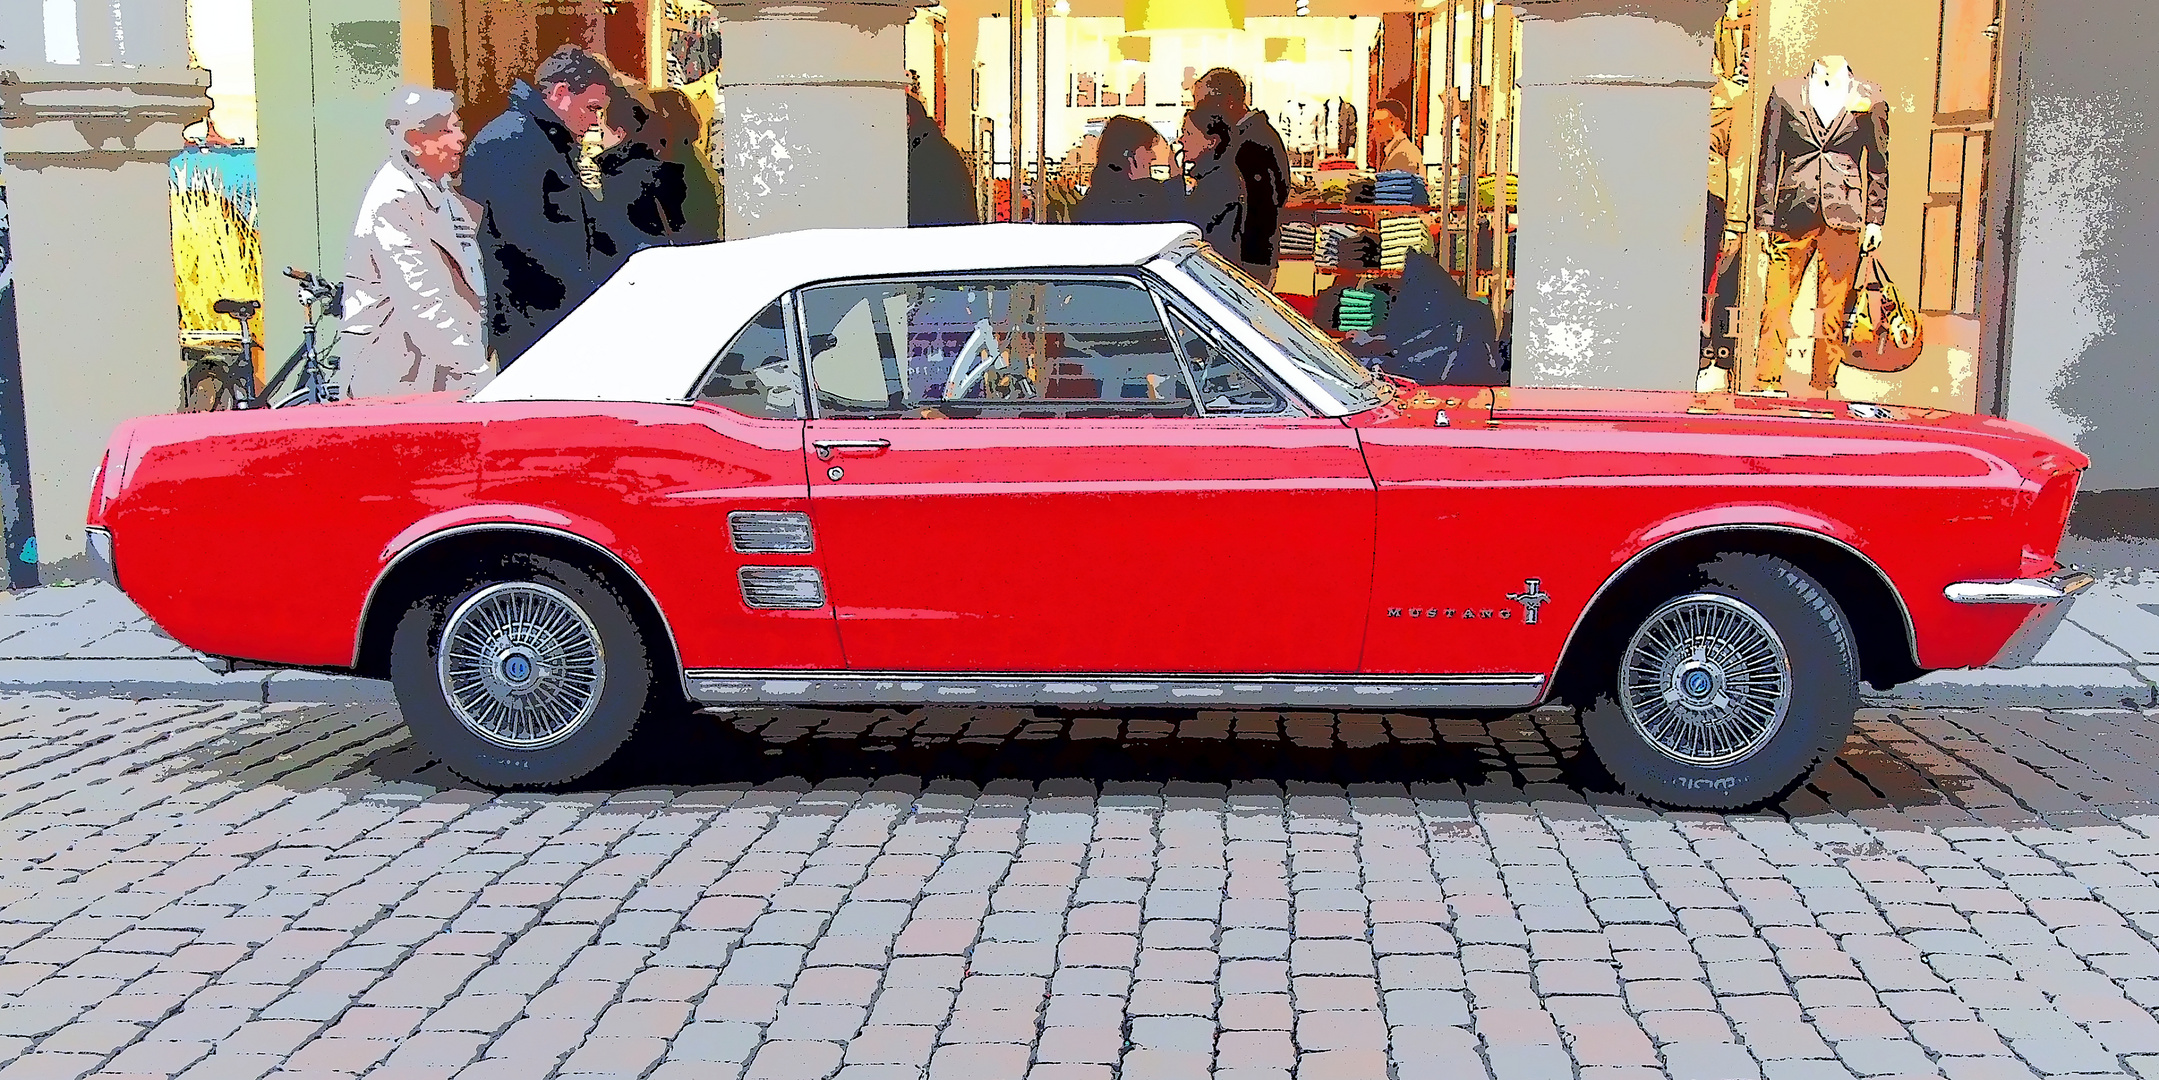 Ford Mustang und Altstadt Münster in Pop Art